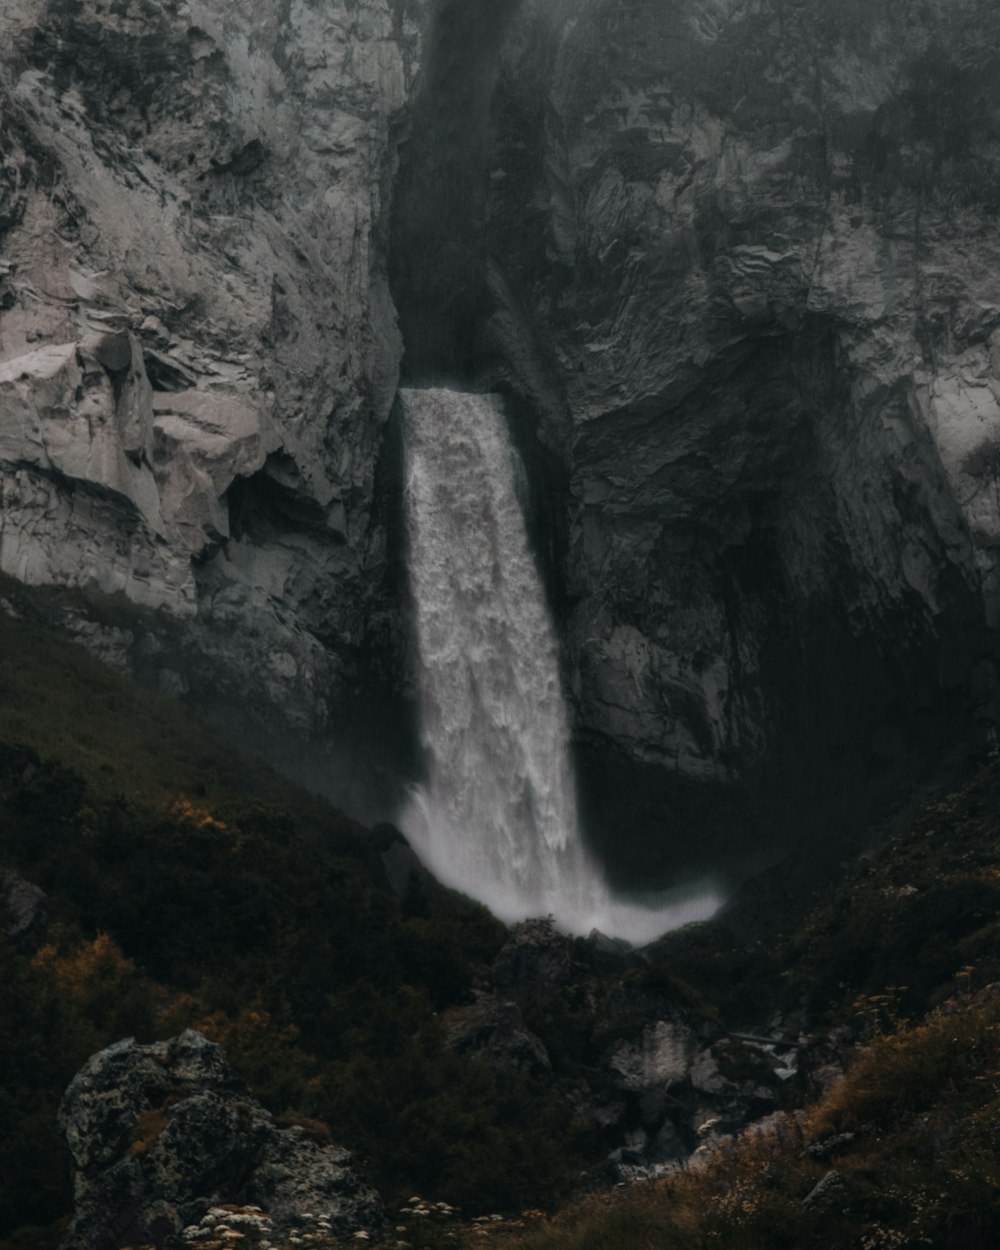 chutes d’eau entre les montagnes rocheuses grises pendant la journée